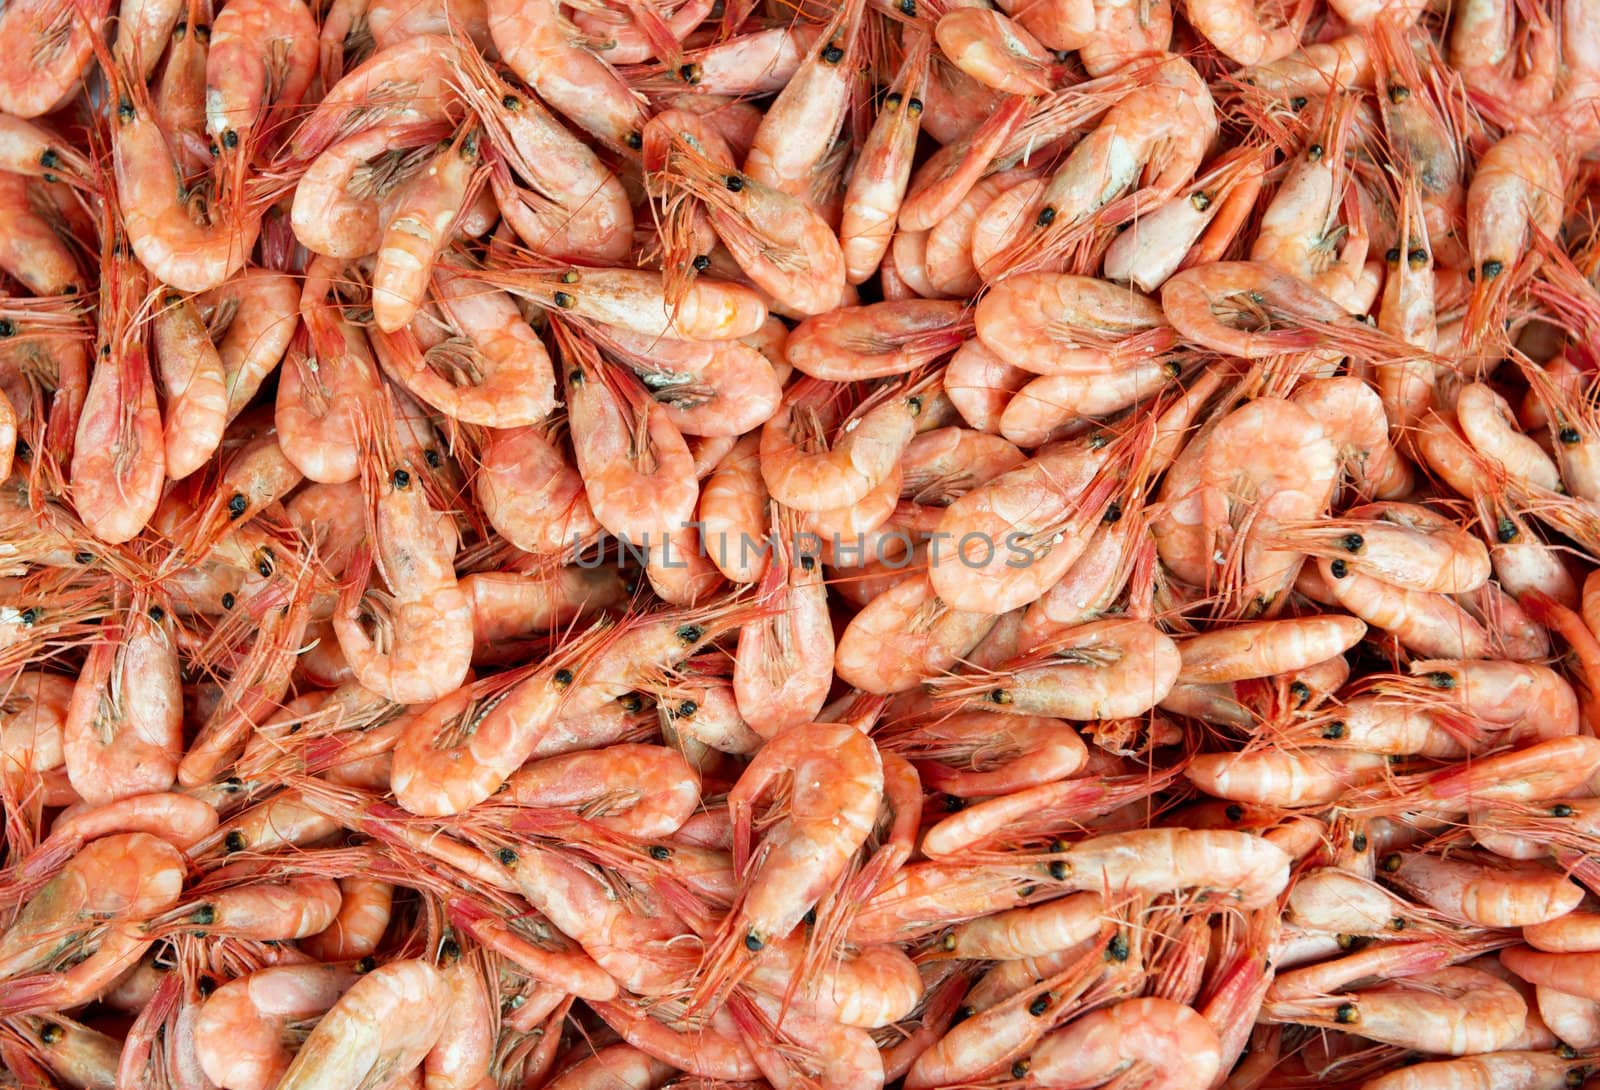 New boiled shrimps by Espevalen